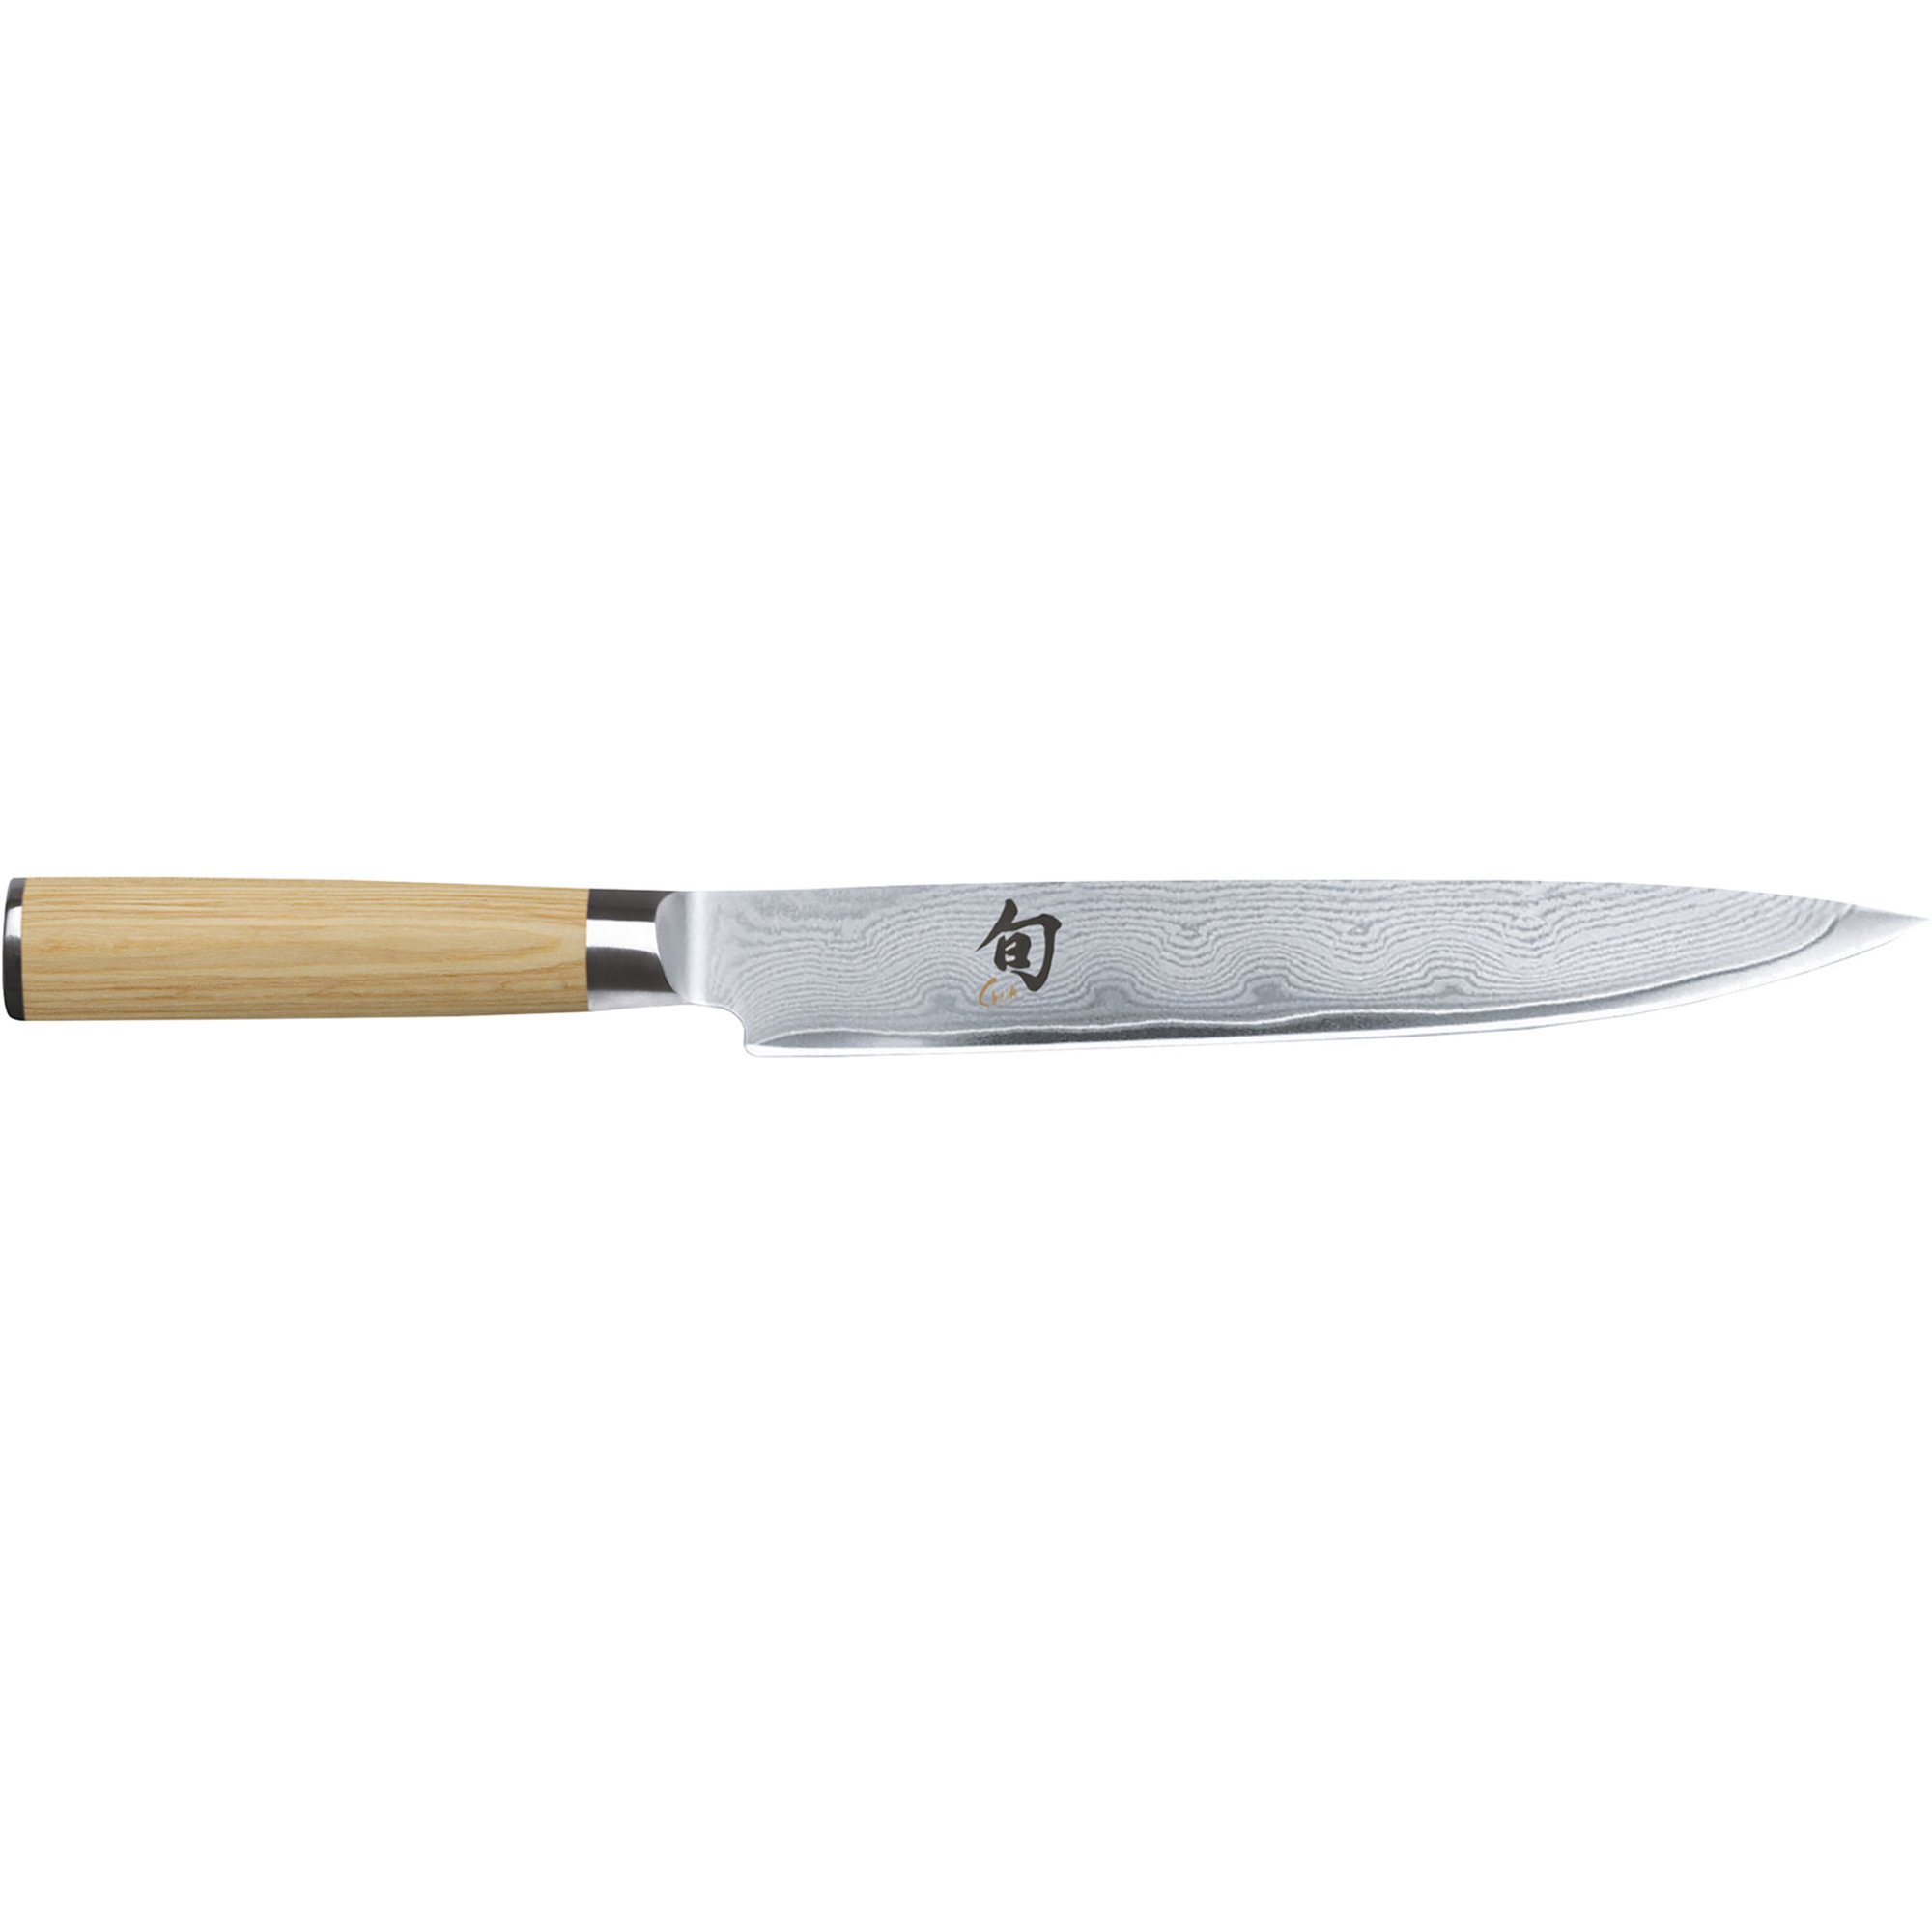 Kai Shun Classic White forskærerkniv, 23 cm